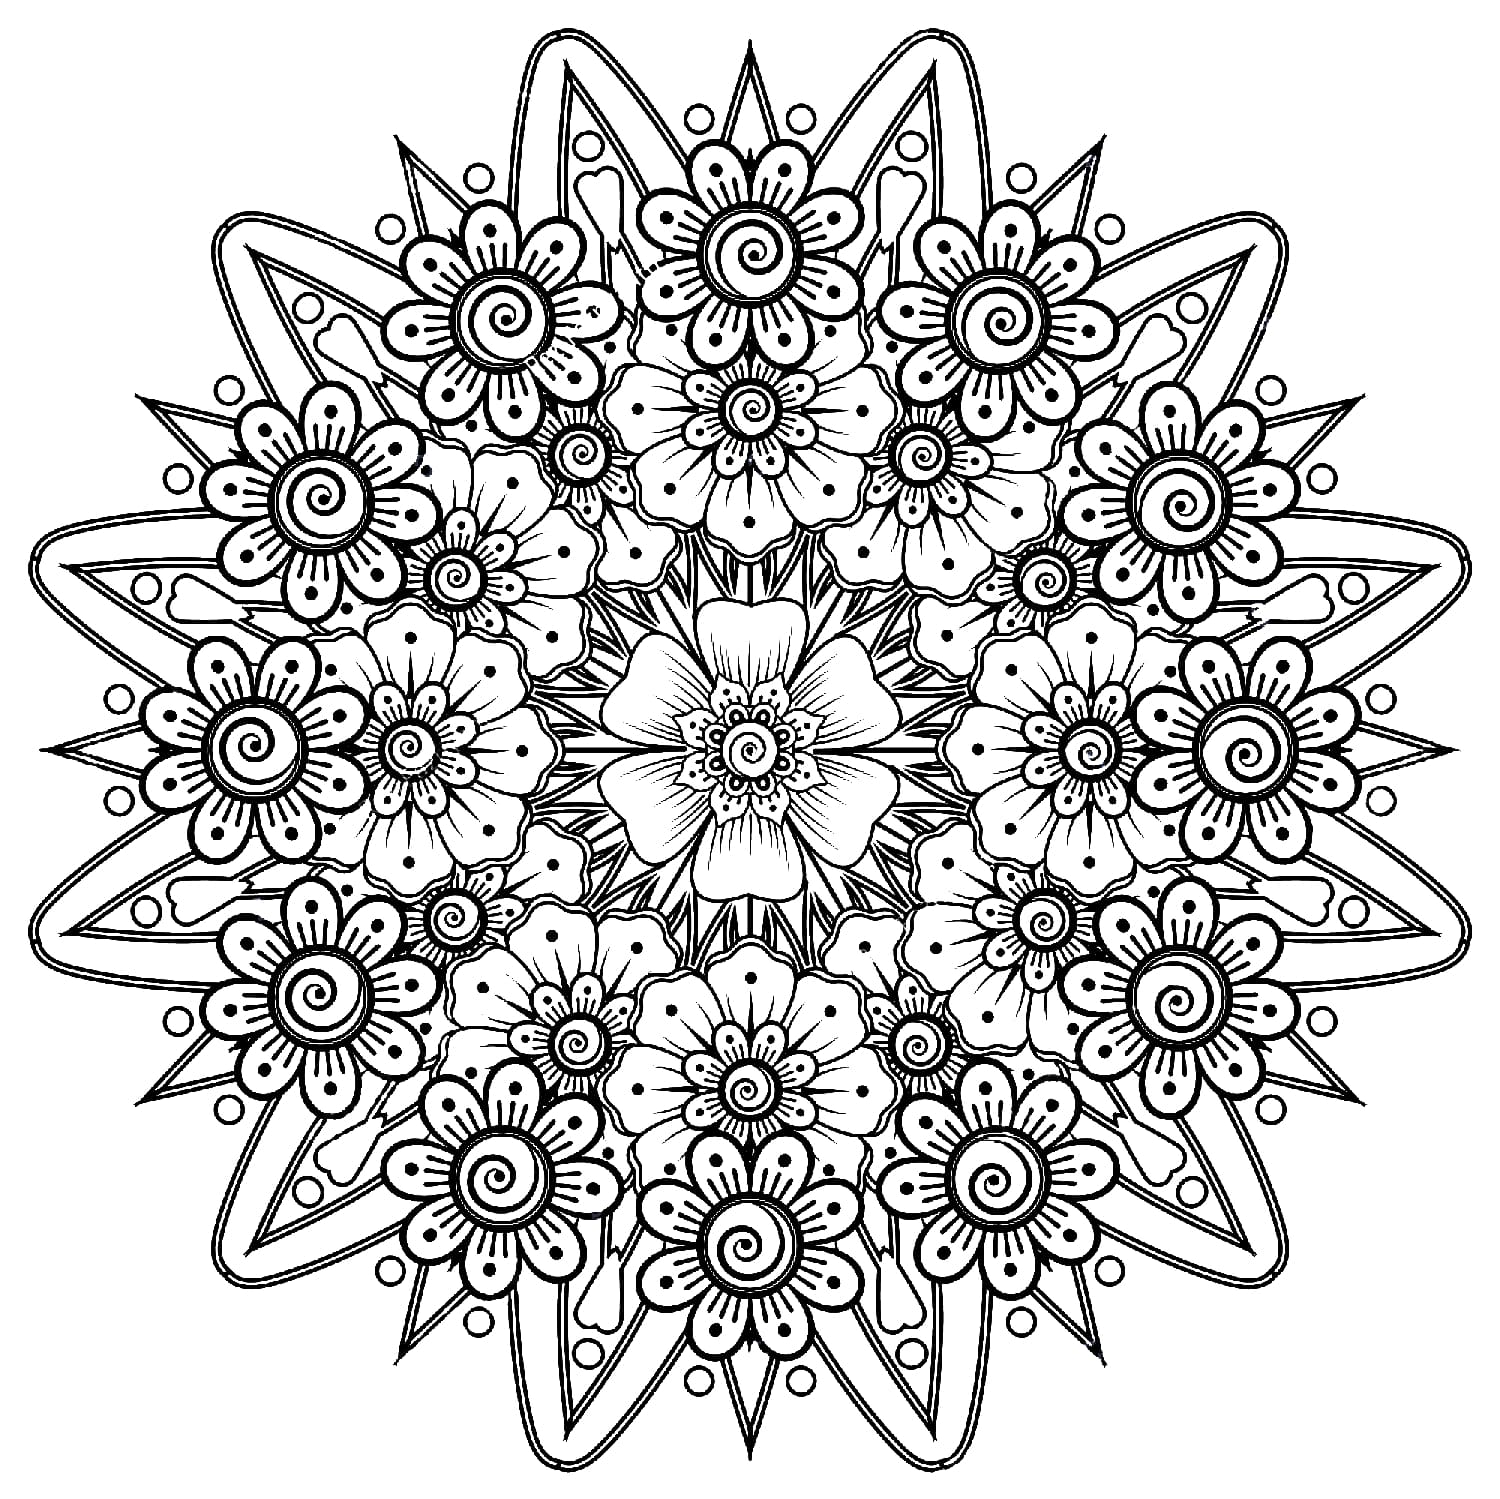 Ausmalbilder Mandala Blumen Zum Ausdrucken.